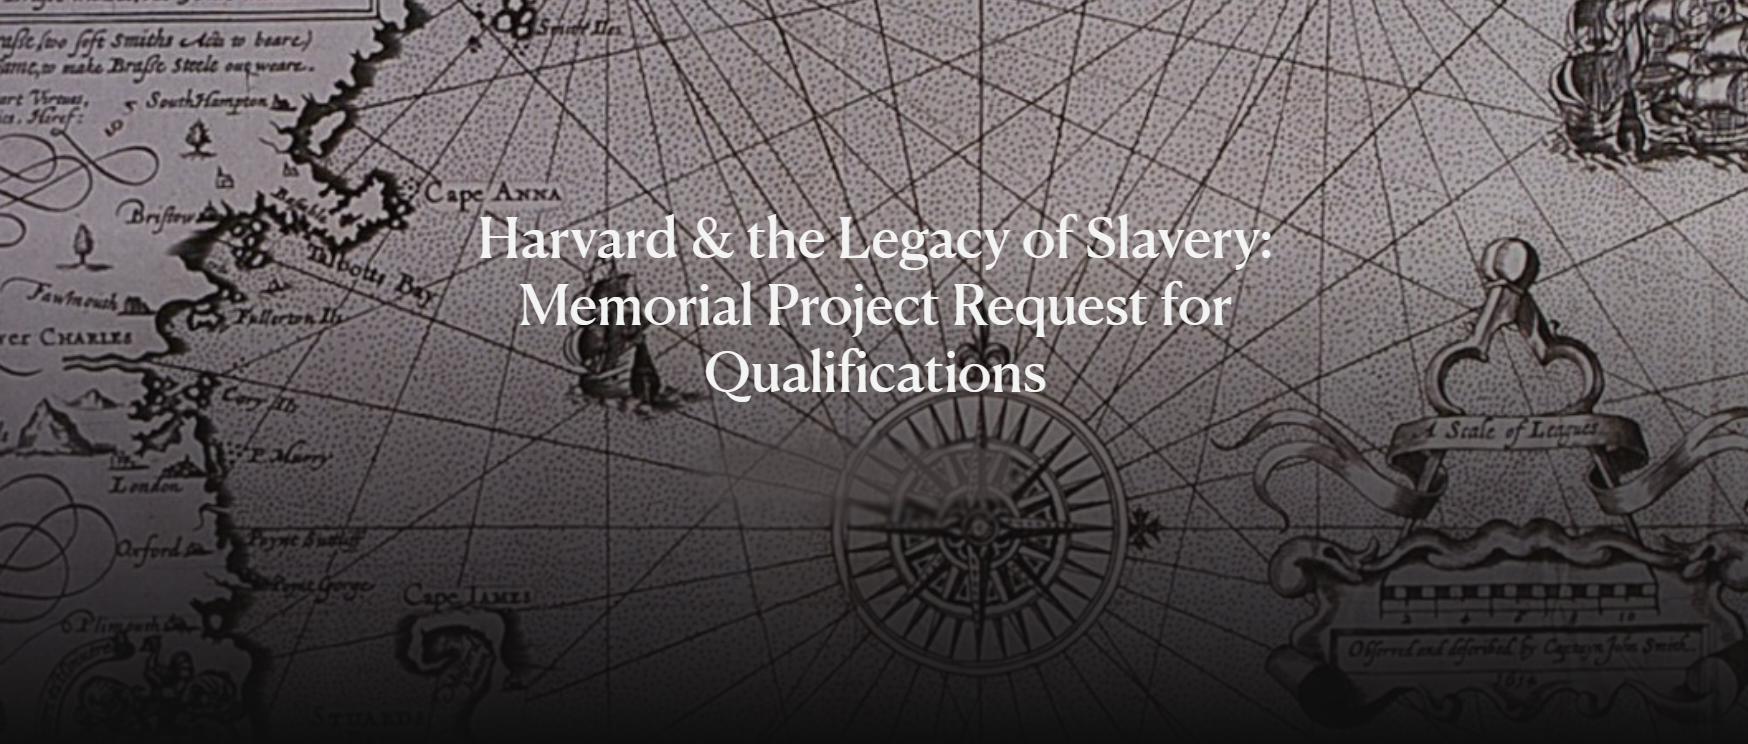 哈佛大学与奴隶制遗产委员会纪念项目征集竞赛-CNYISAI艺赛